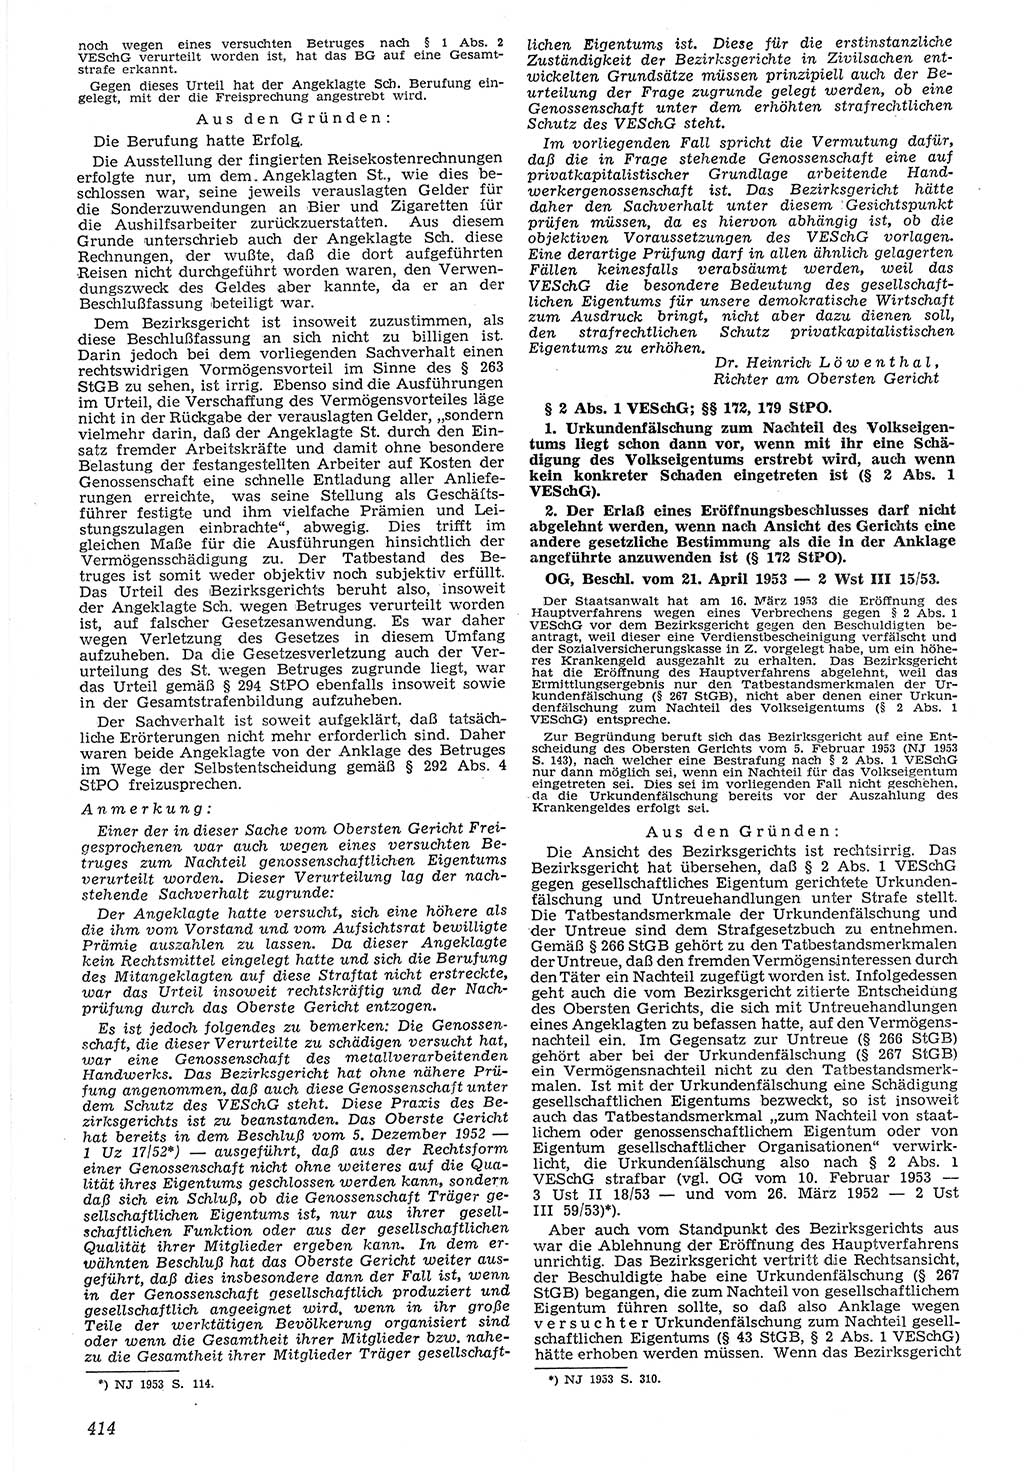 Neue Justiz (NJ), Zeitschrift für Recht und Rechtswissenschaft [Deutsche Demokratische Republik (DDR)], 7. Jahrgang 1953, Seite 414 (NJ DDR 1953, S. 414)